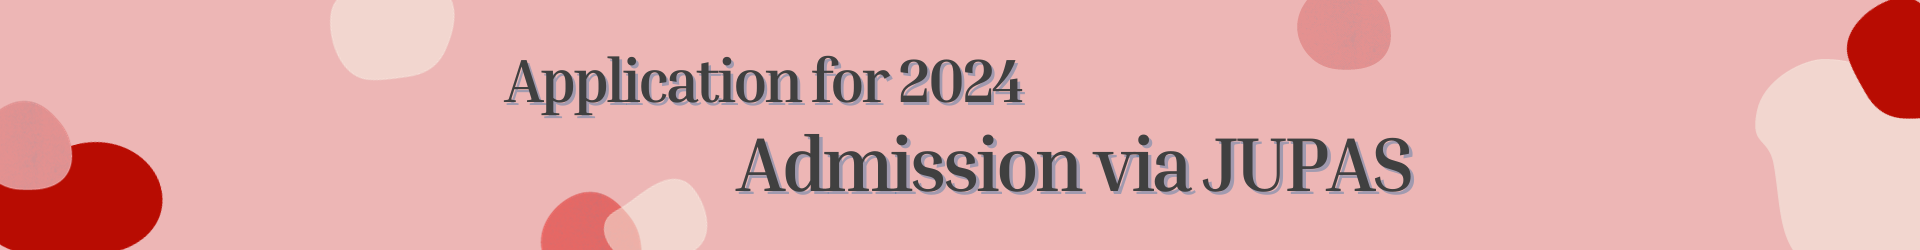 Application for 2023 Admission via JUPAS